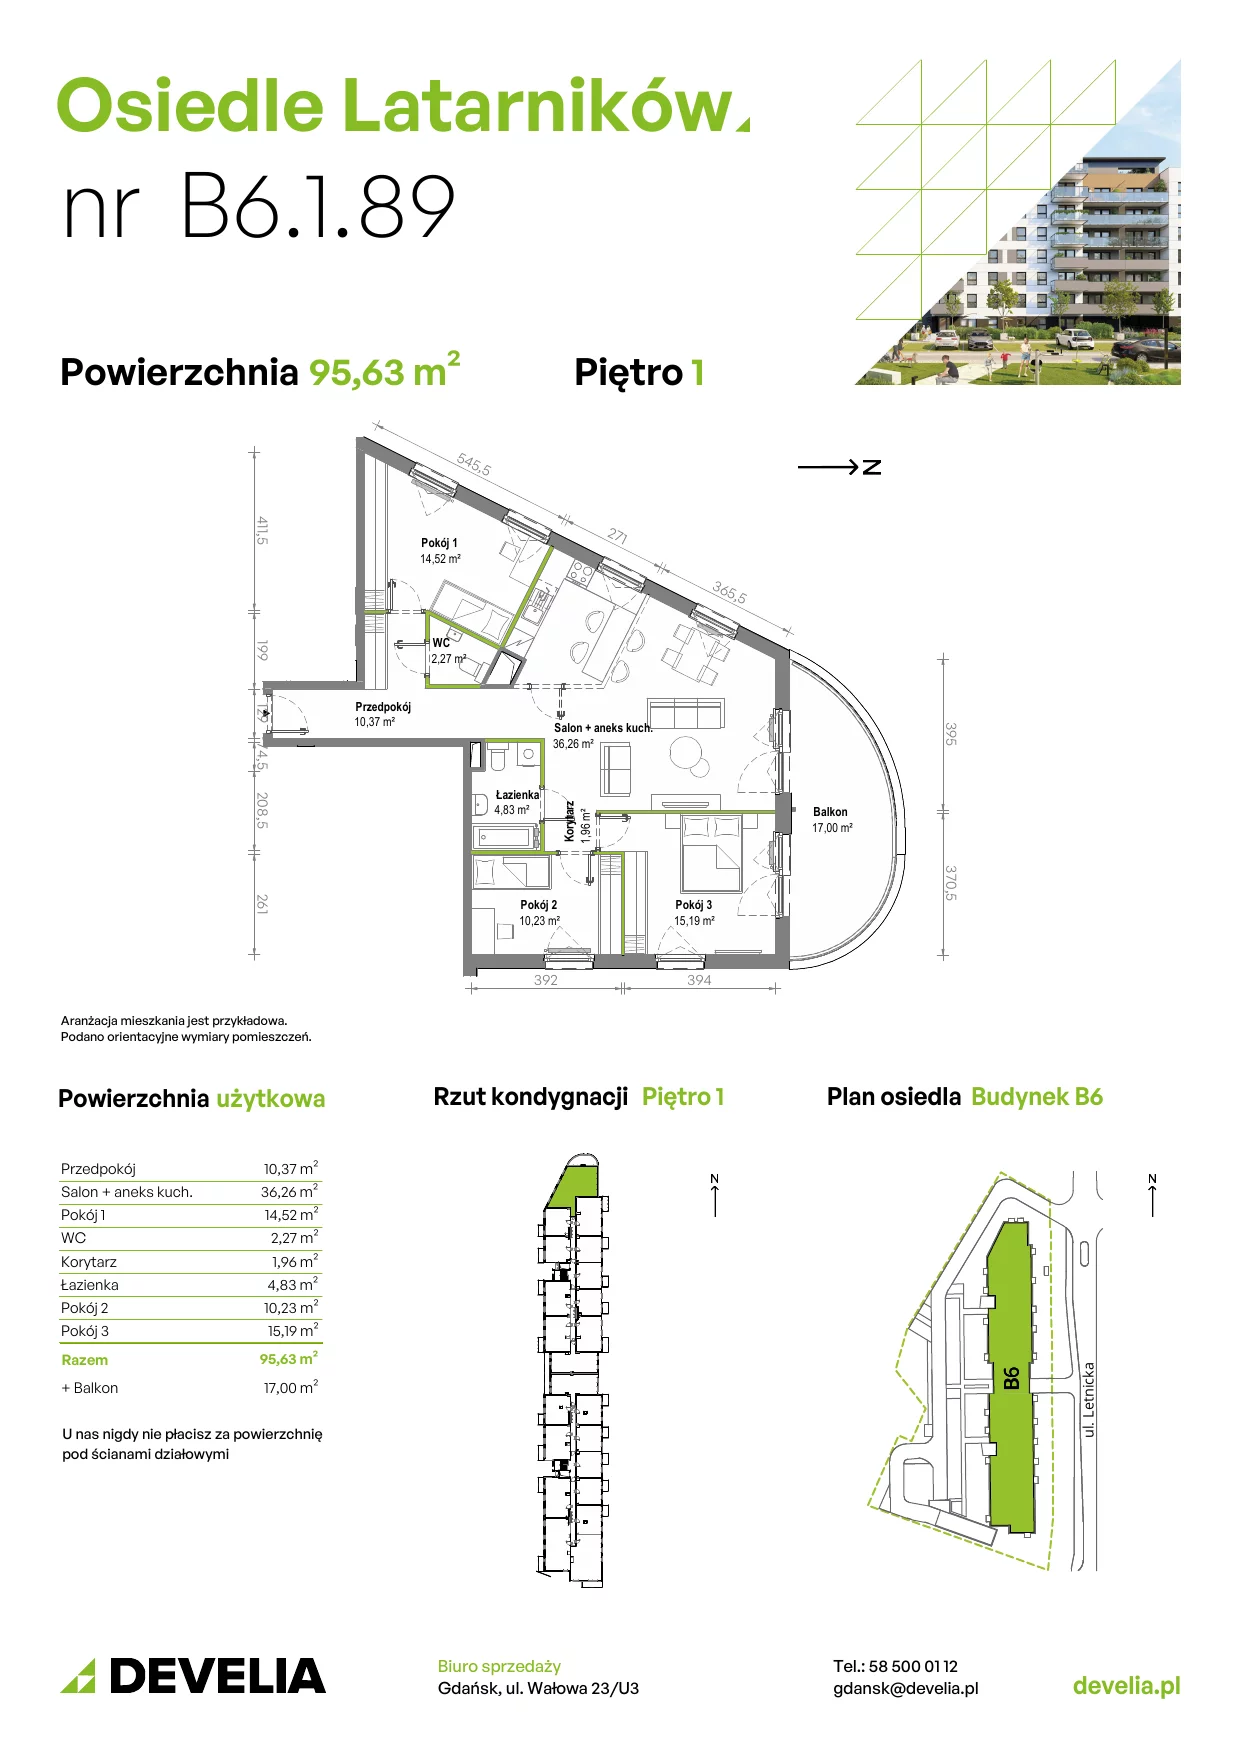 Mieszkanie 95,37 m², piętro 1, oferta nr B6.1.089, Osiedle Latarników, Gdańsk, Letnica, ul. Letnicka 1